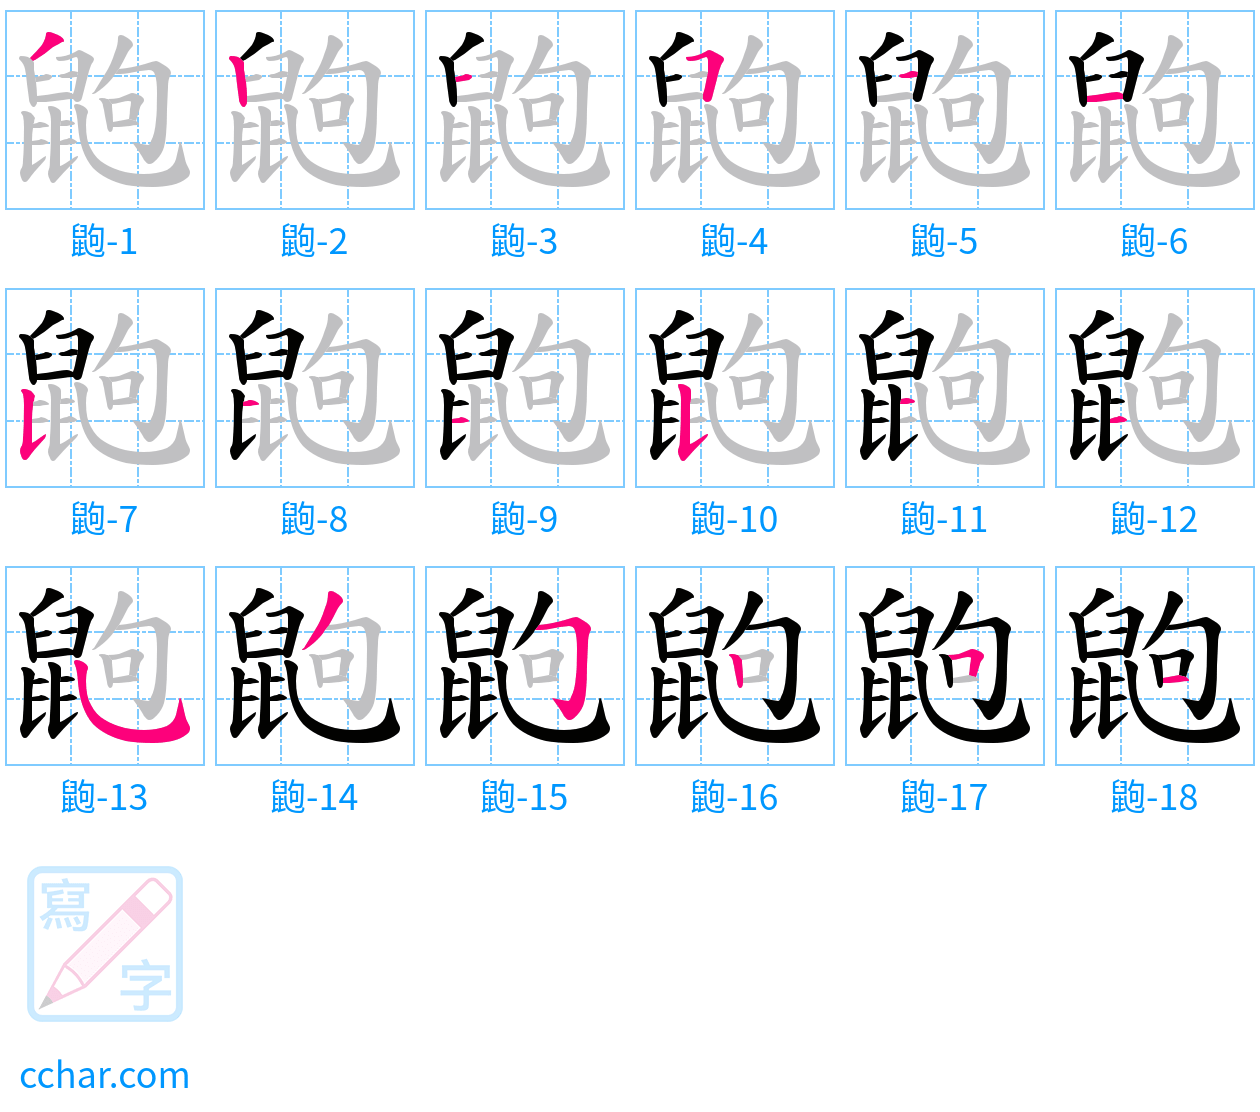 鼩 stroke order step-by-step diagram